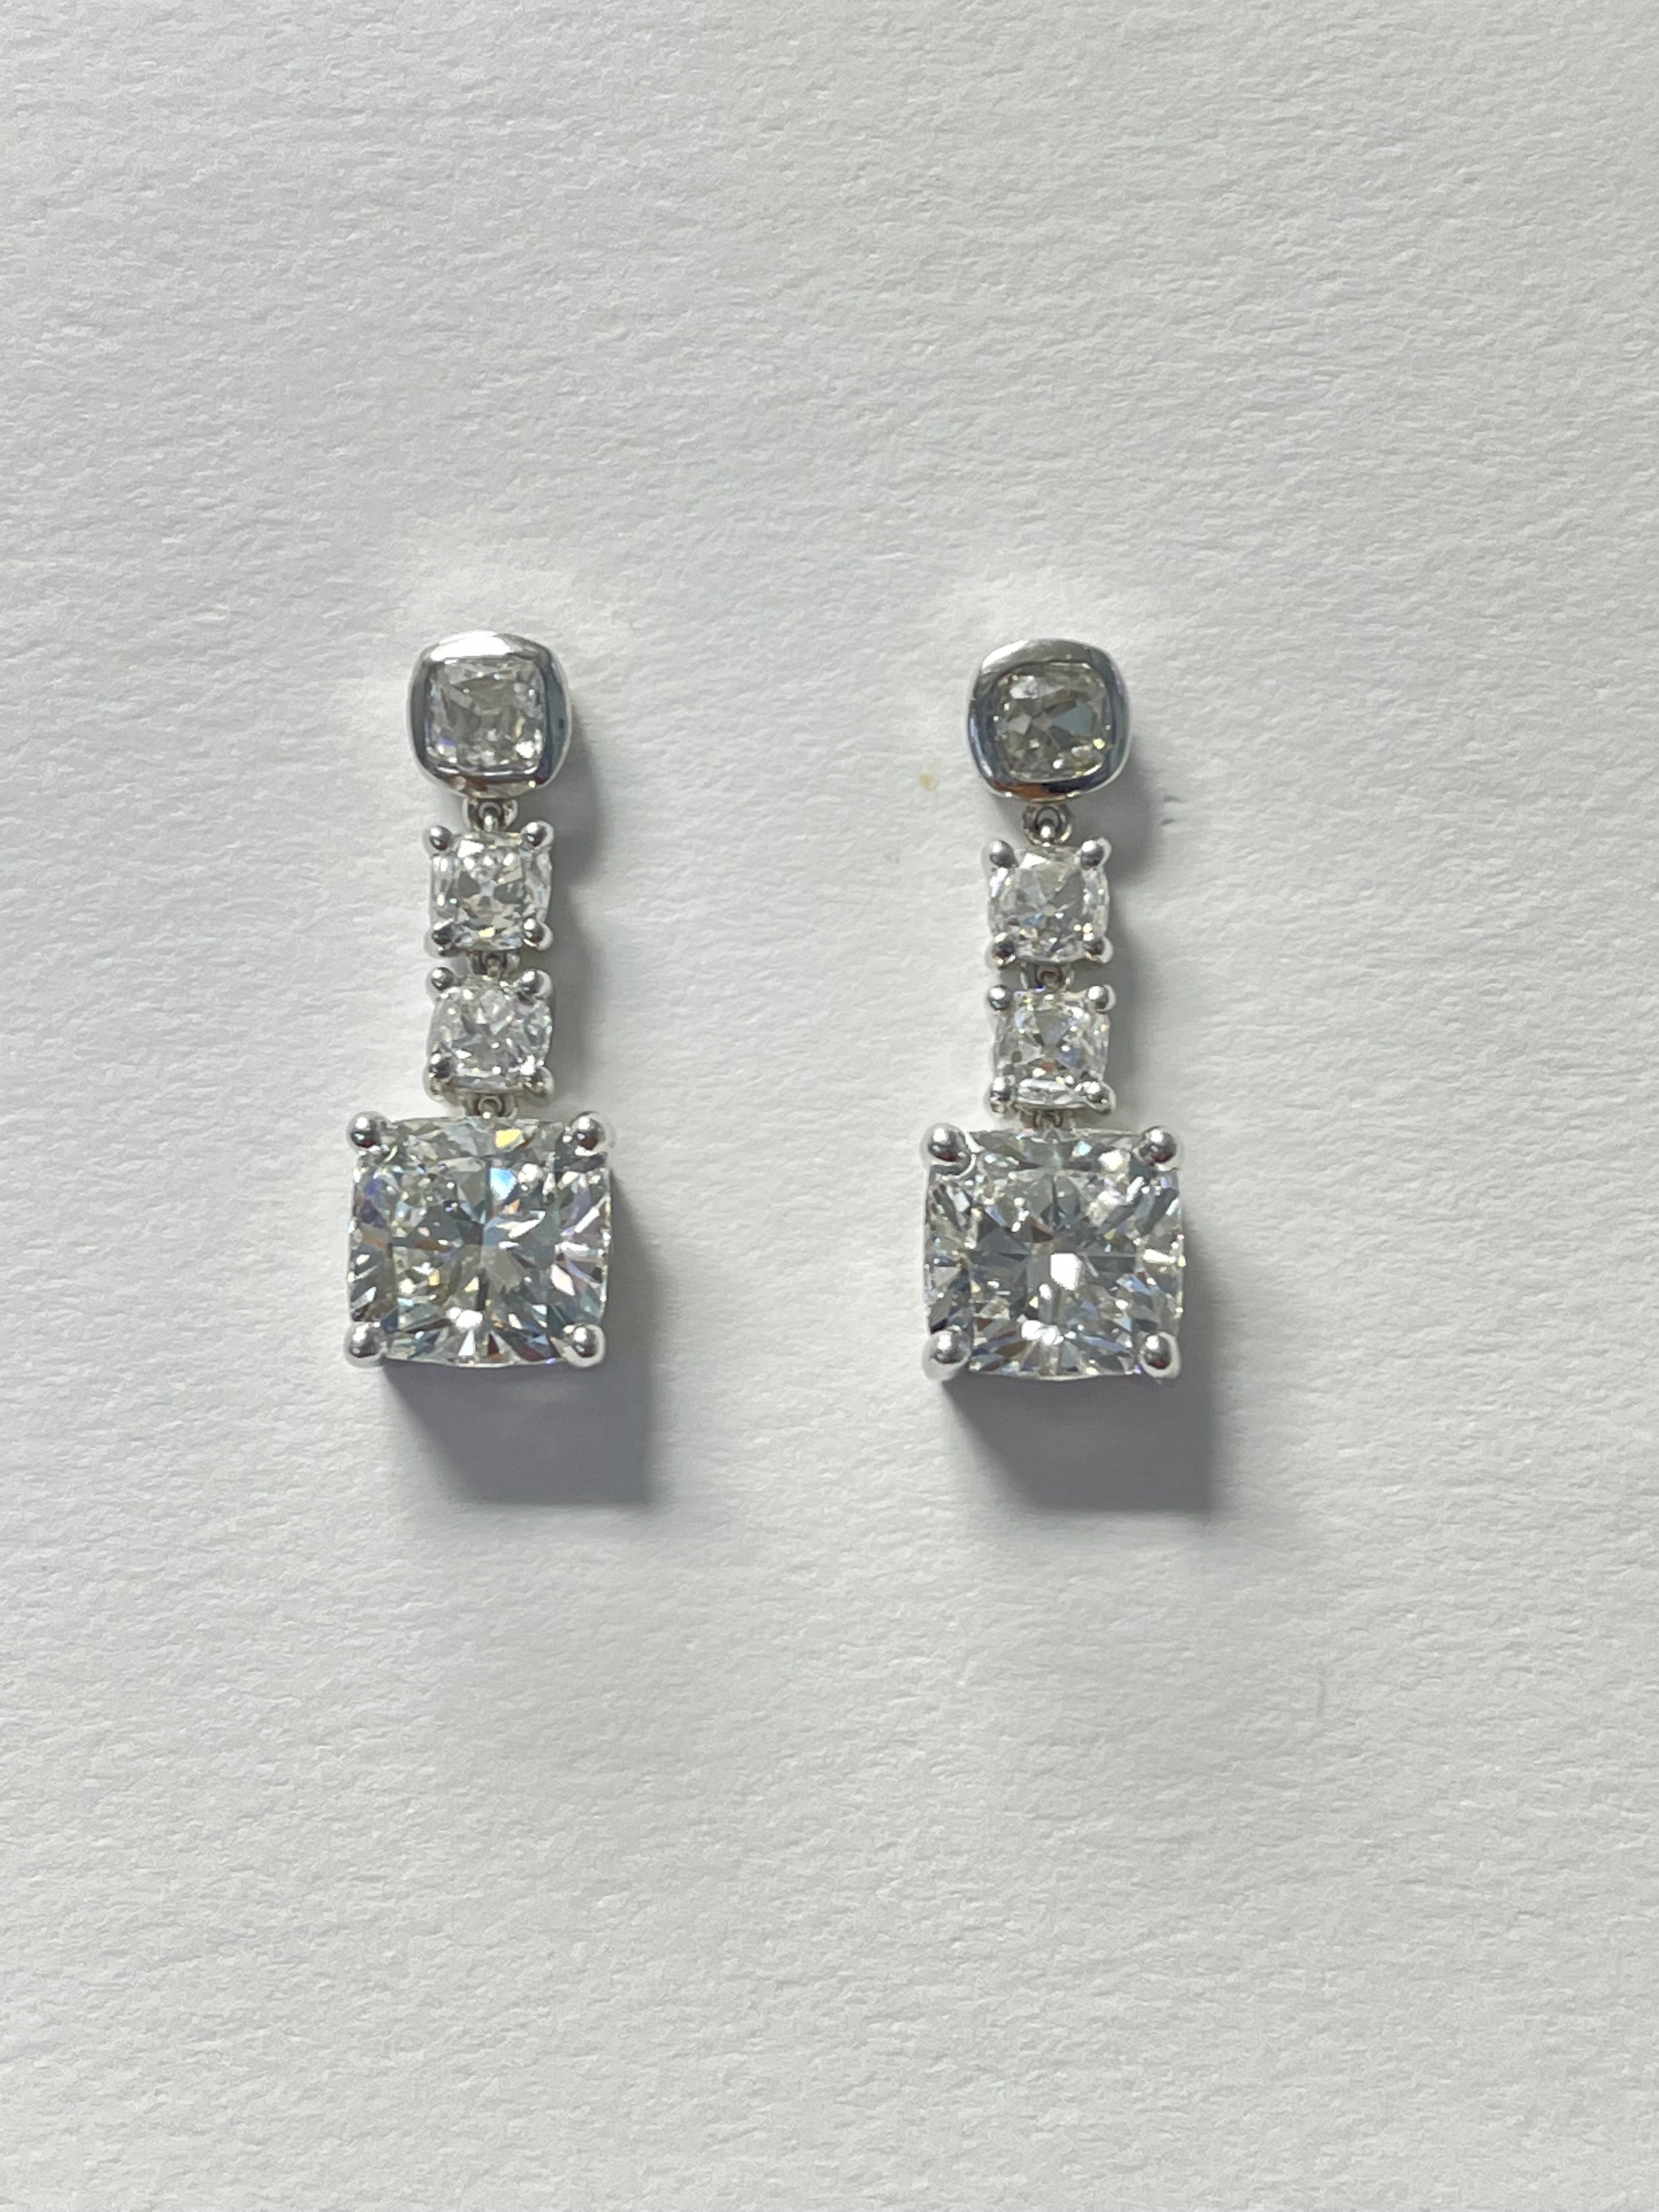 Boucles d'oreilles pendantes en diamant coussin certifié par le GIA, composées de trois pierres et réalisées à la main en platine.
Les détails sont les suivants : 
Poids du diamant : 4,03 carats (2,02 de couleur F et de pureté VS2) (2,01 de couleur